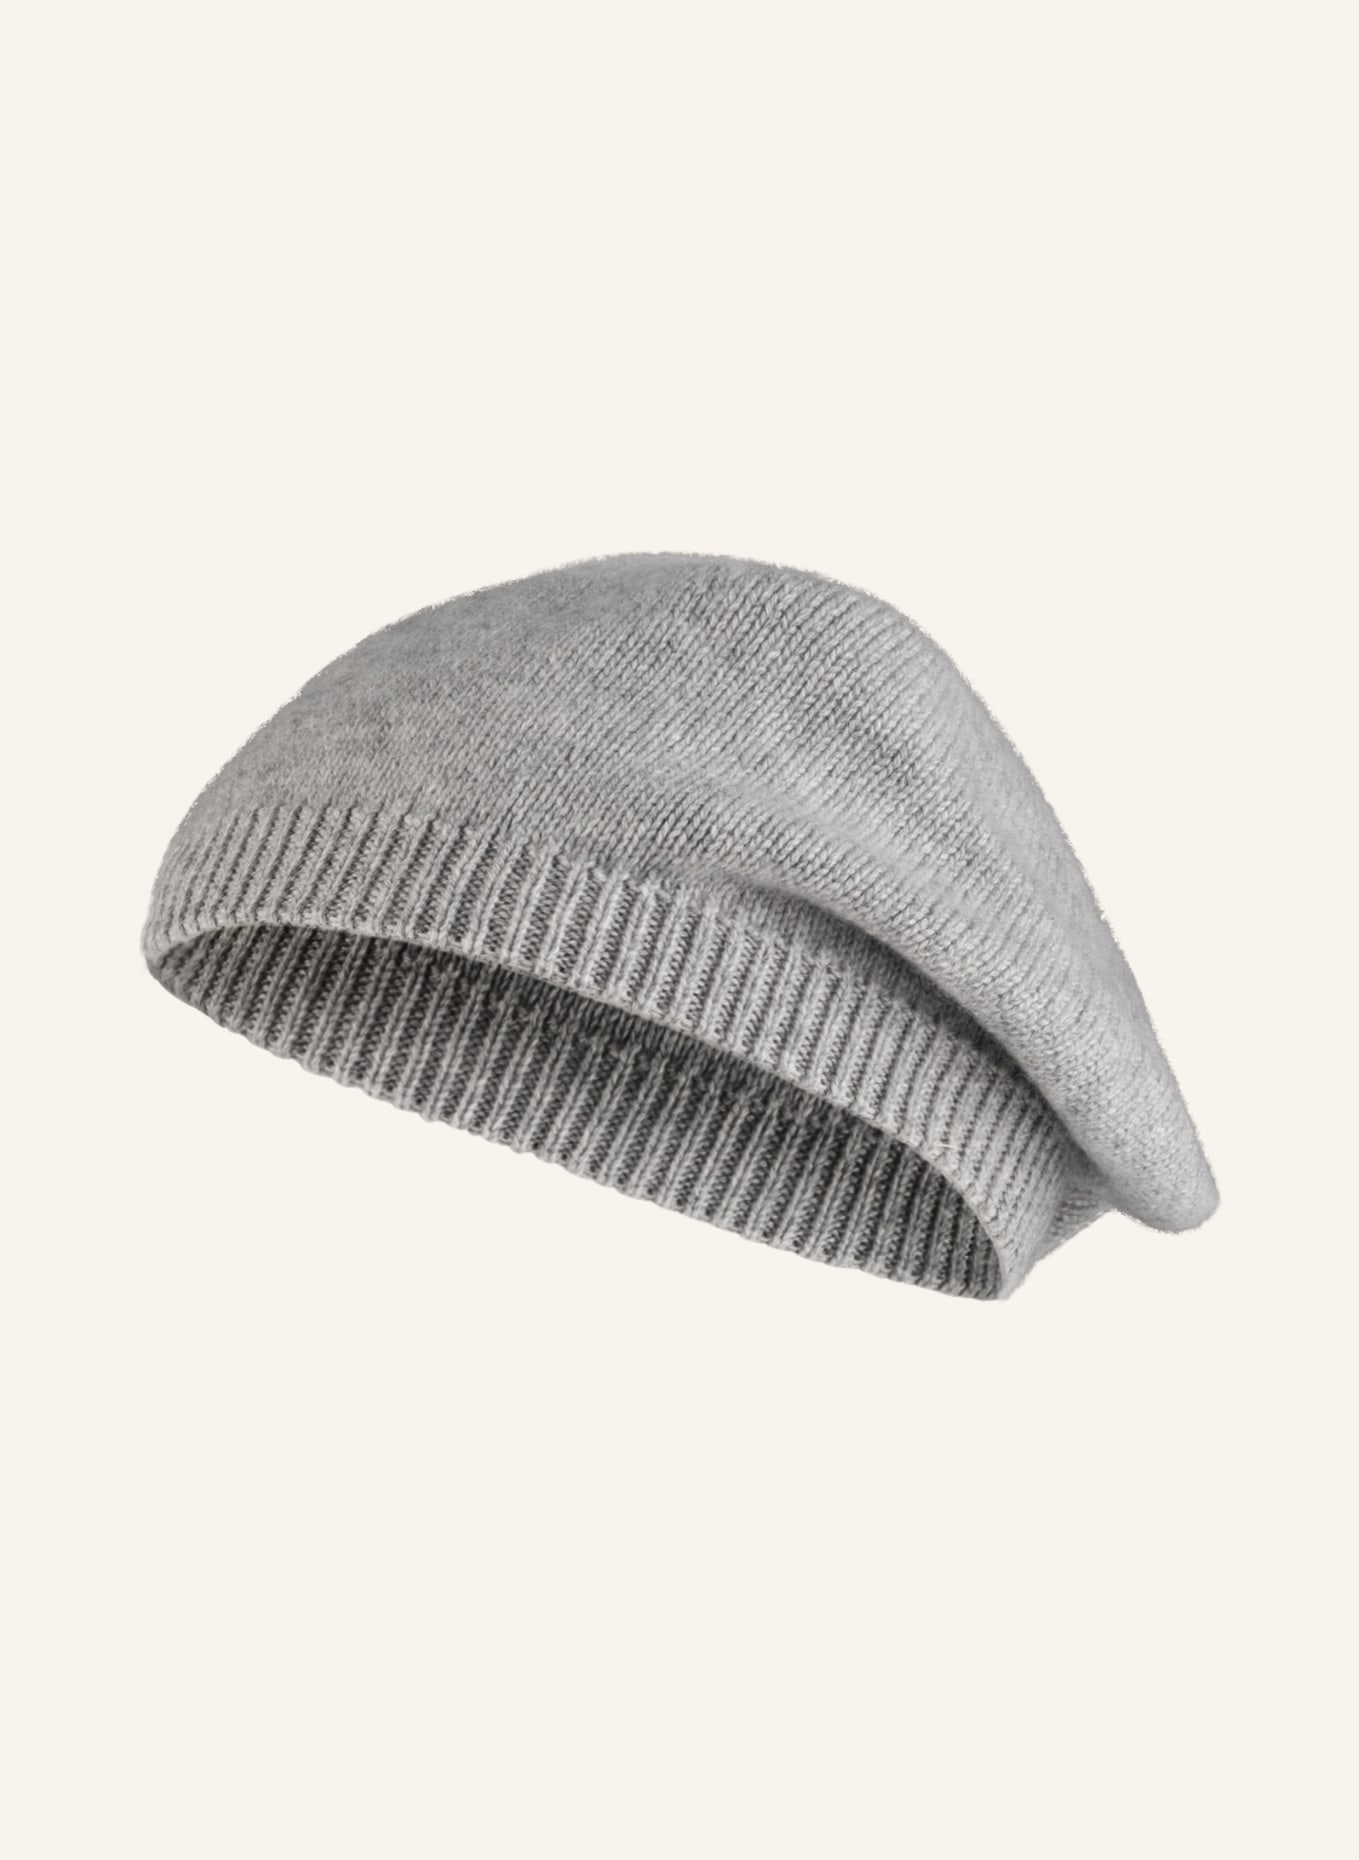 S.MARLON Cashmere hat, Color: GRAY (Image 1)